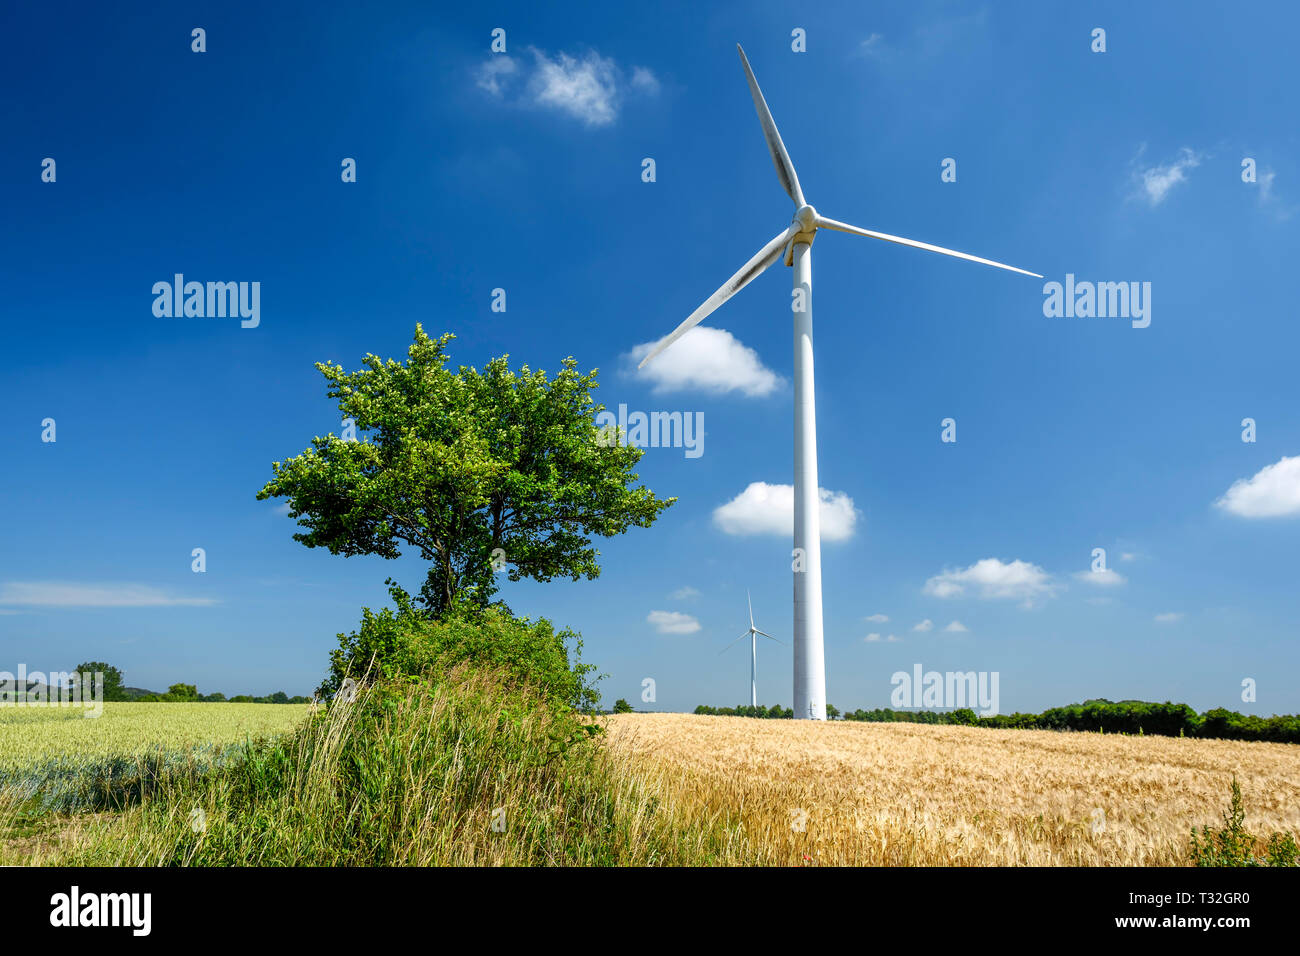 Turbina eolica nel comune di Scharbeutz NEL LAND SCHLESWIG-HOLSTEIN, Germania, Europa Windrad in der Gemeinde Scharbeutz in Schleswig-Holstein, DEU Foto Stock